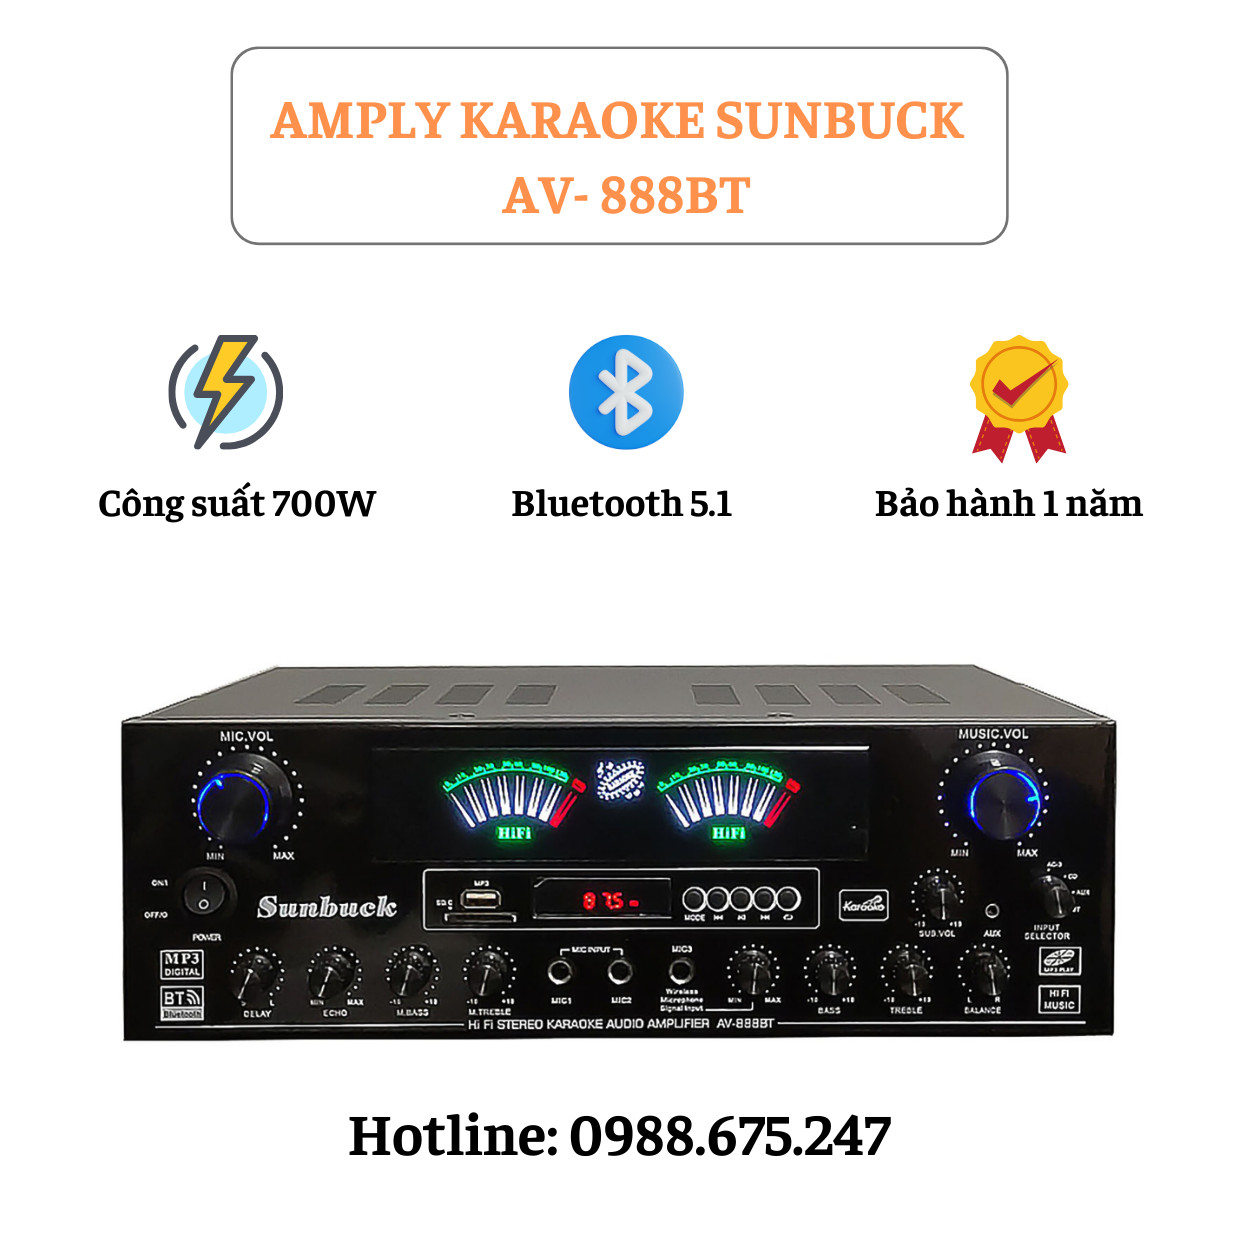 Amply Sunbuck 888BT đánh nhạc cực xịn âm thanh cực đỉnh amply karaoke có kết nối bluetooth